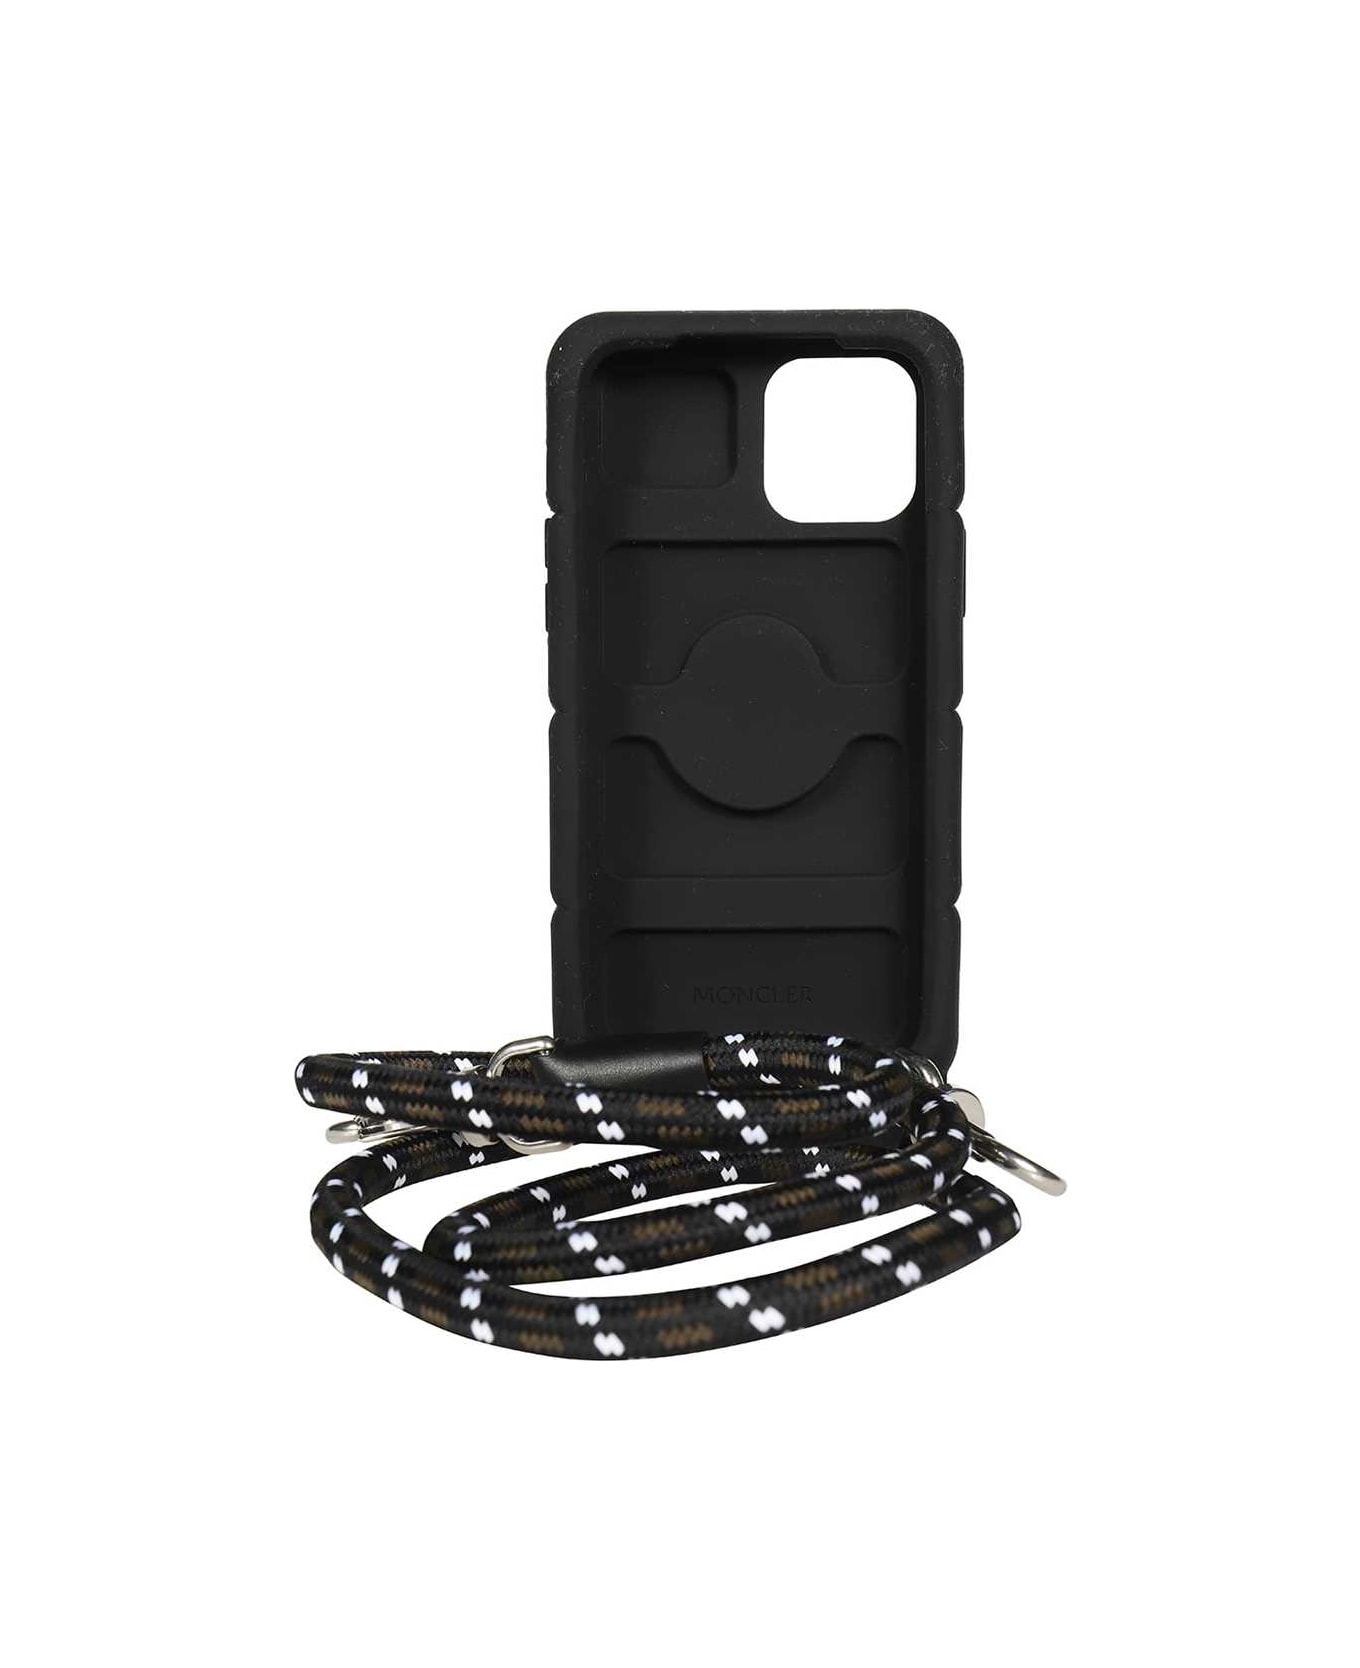 Moncler Iphone Silicon Case - black デジタルアクセサリー